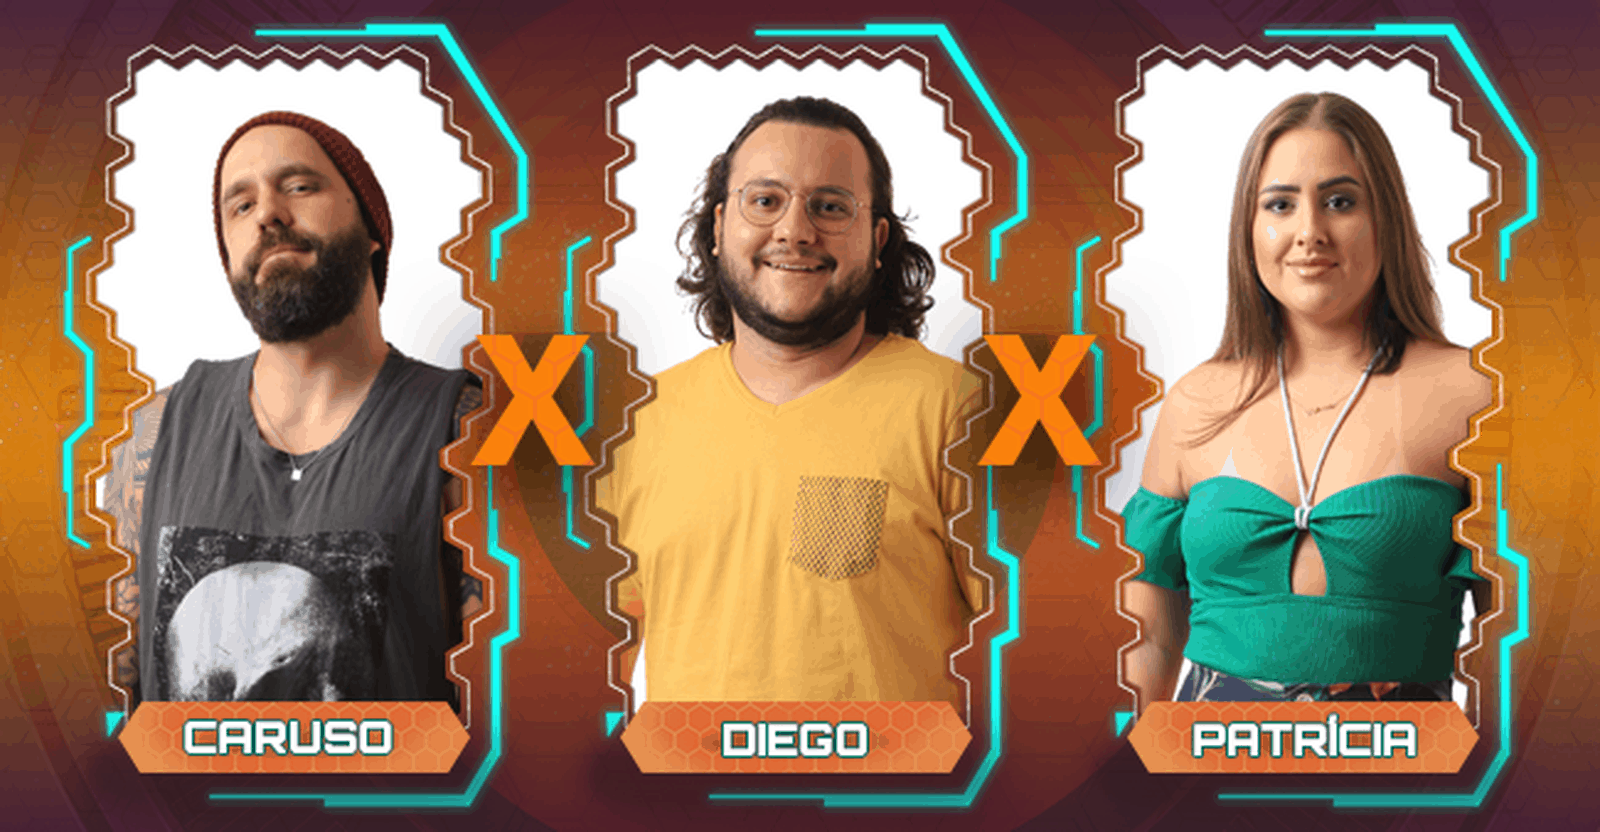 Enquete BBB 2018: Quem vai sair, Caruso, Diego ou Patrícia ? Veja o resultado parcial!